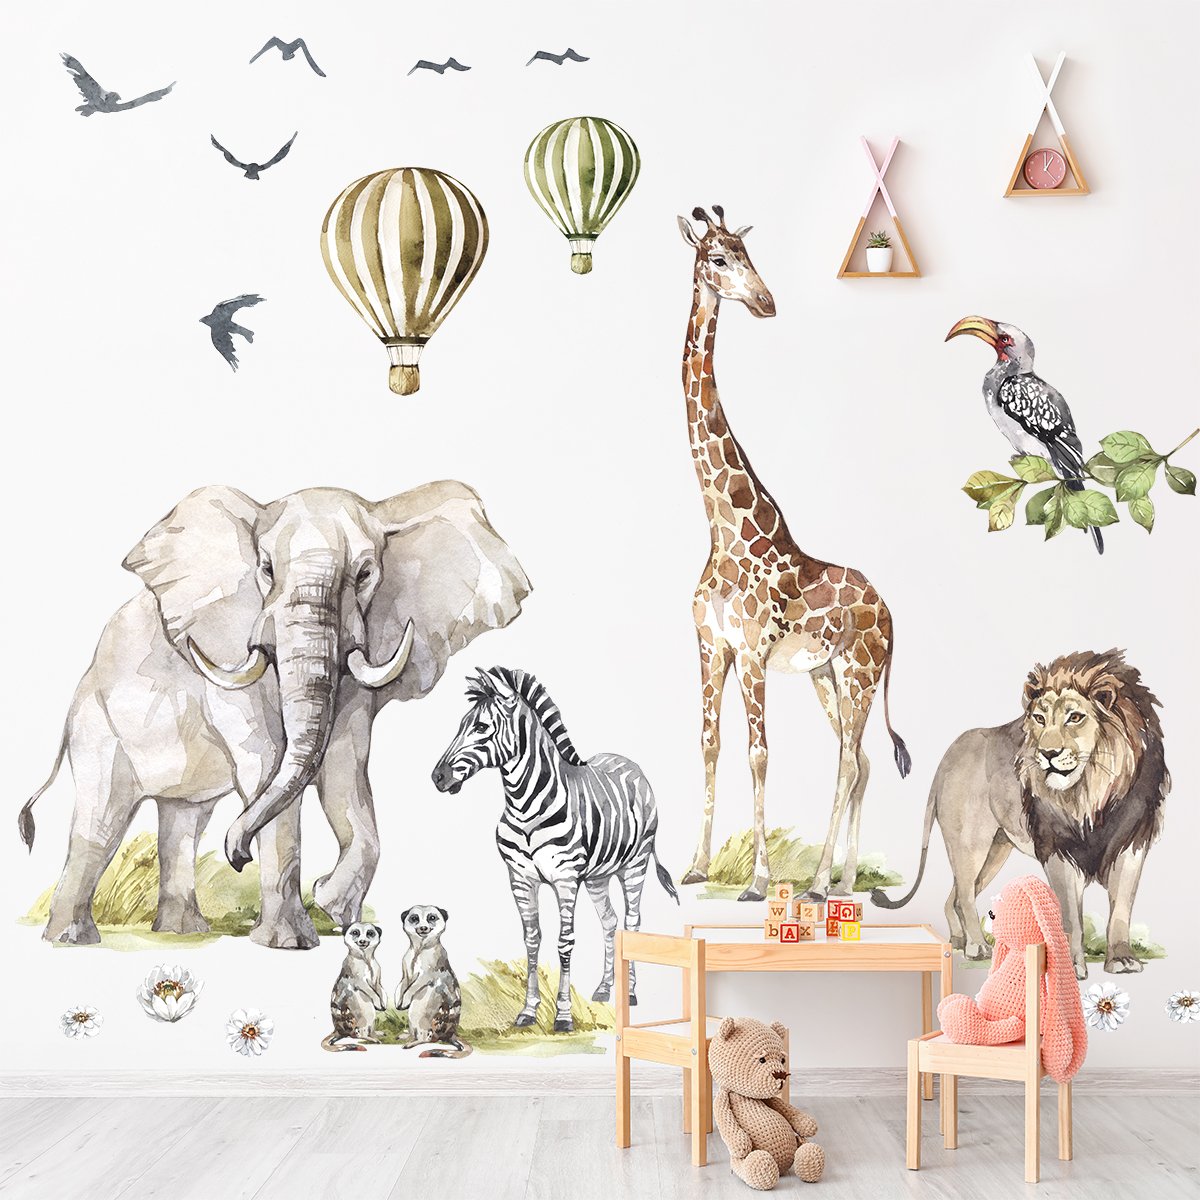 Naklejki na ścianę dla dzieci ze zwierzętami Afryki - duży zestaw